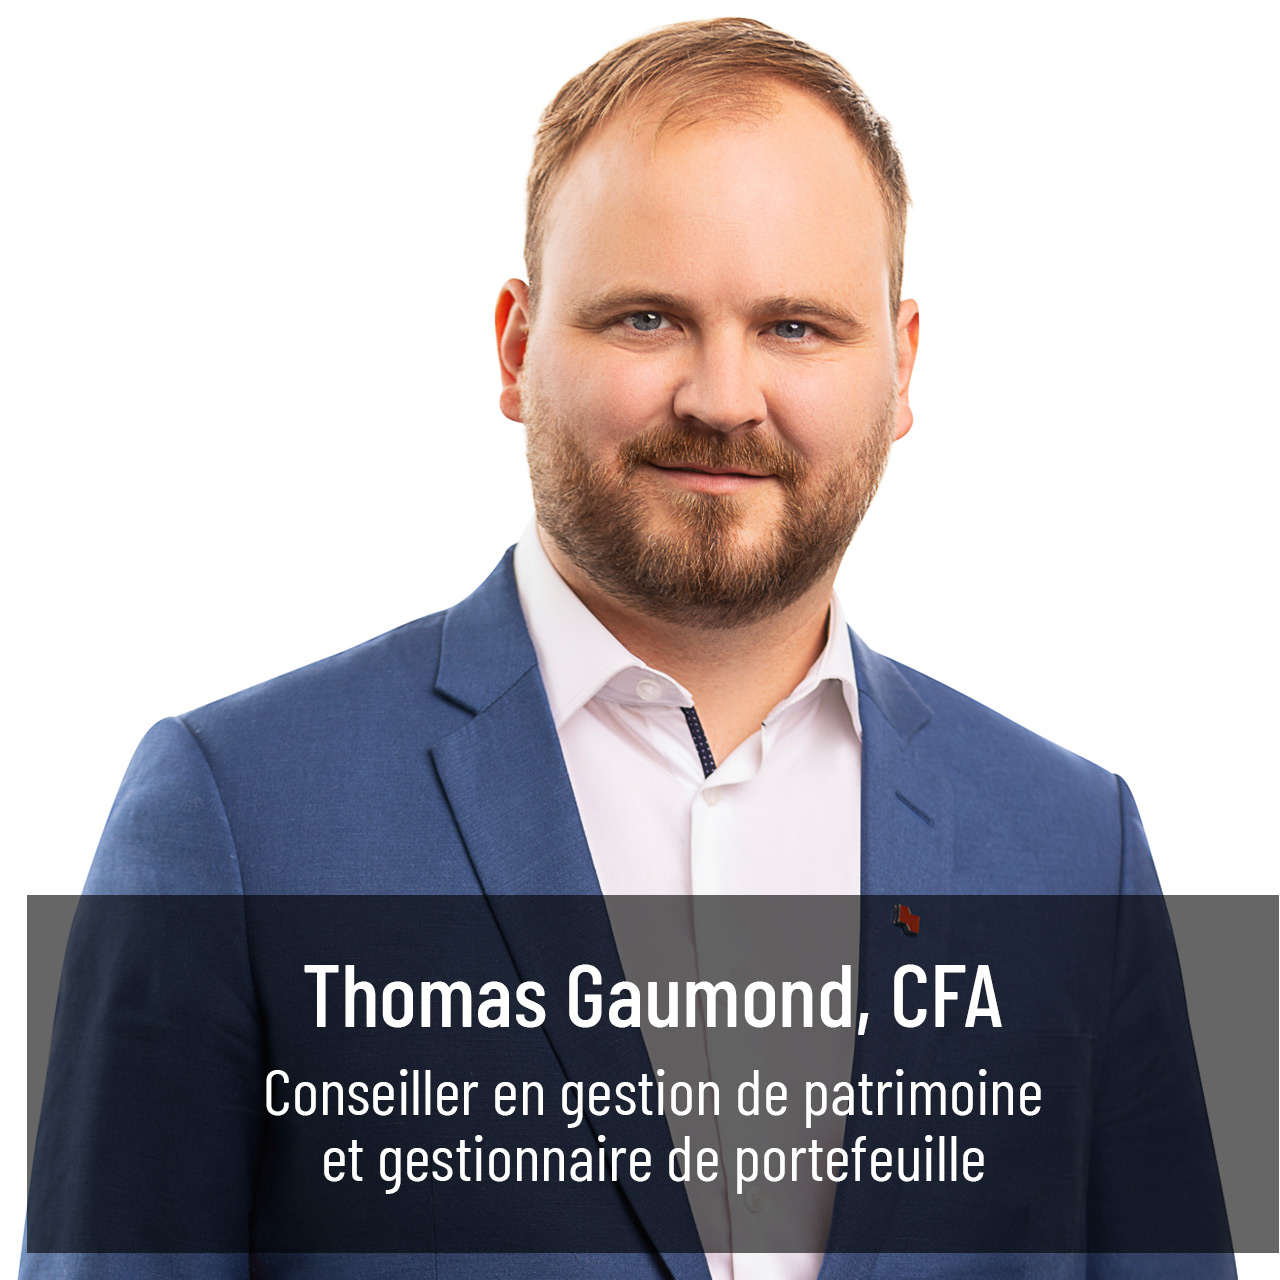 Thomas Gaumond